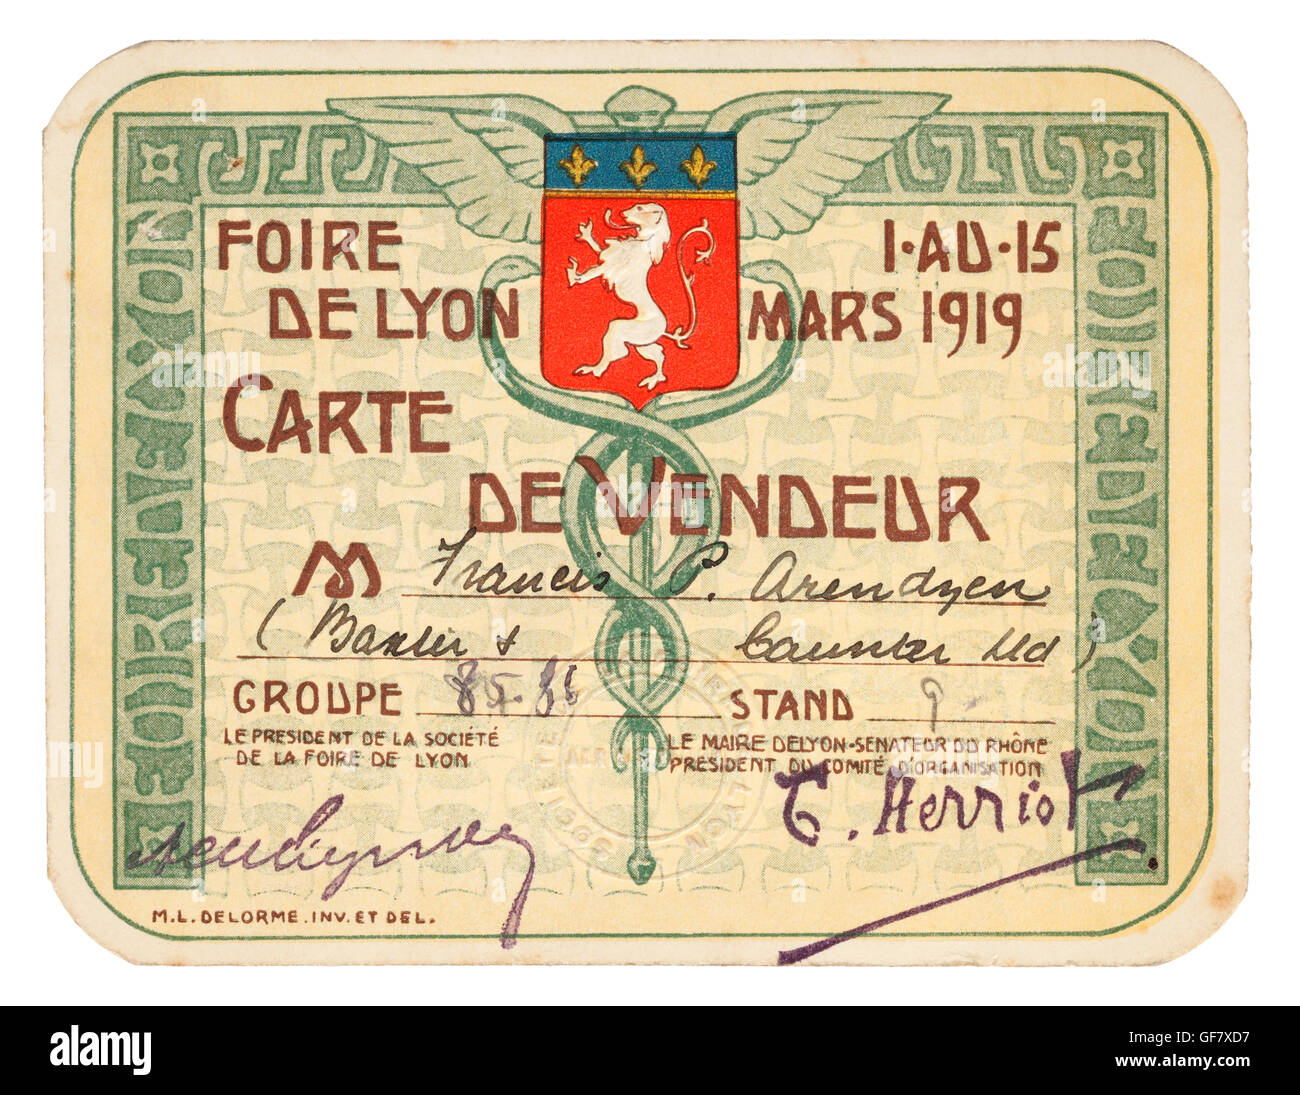 Carte de Vendeur, Foire de Lyon o il commercio equo a Lione, in Francia nel 1919 Foto Stock